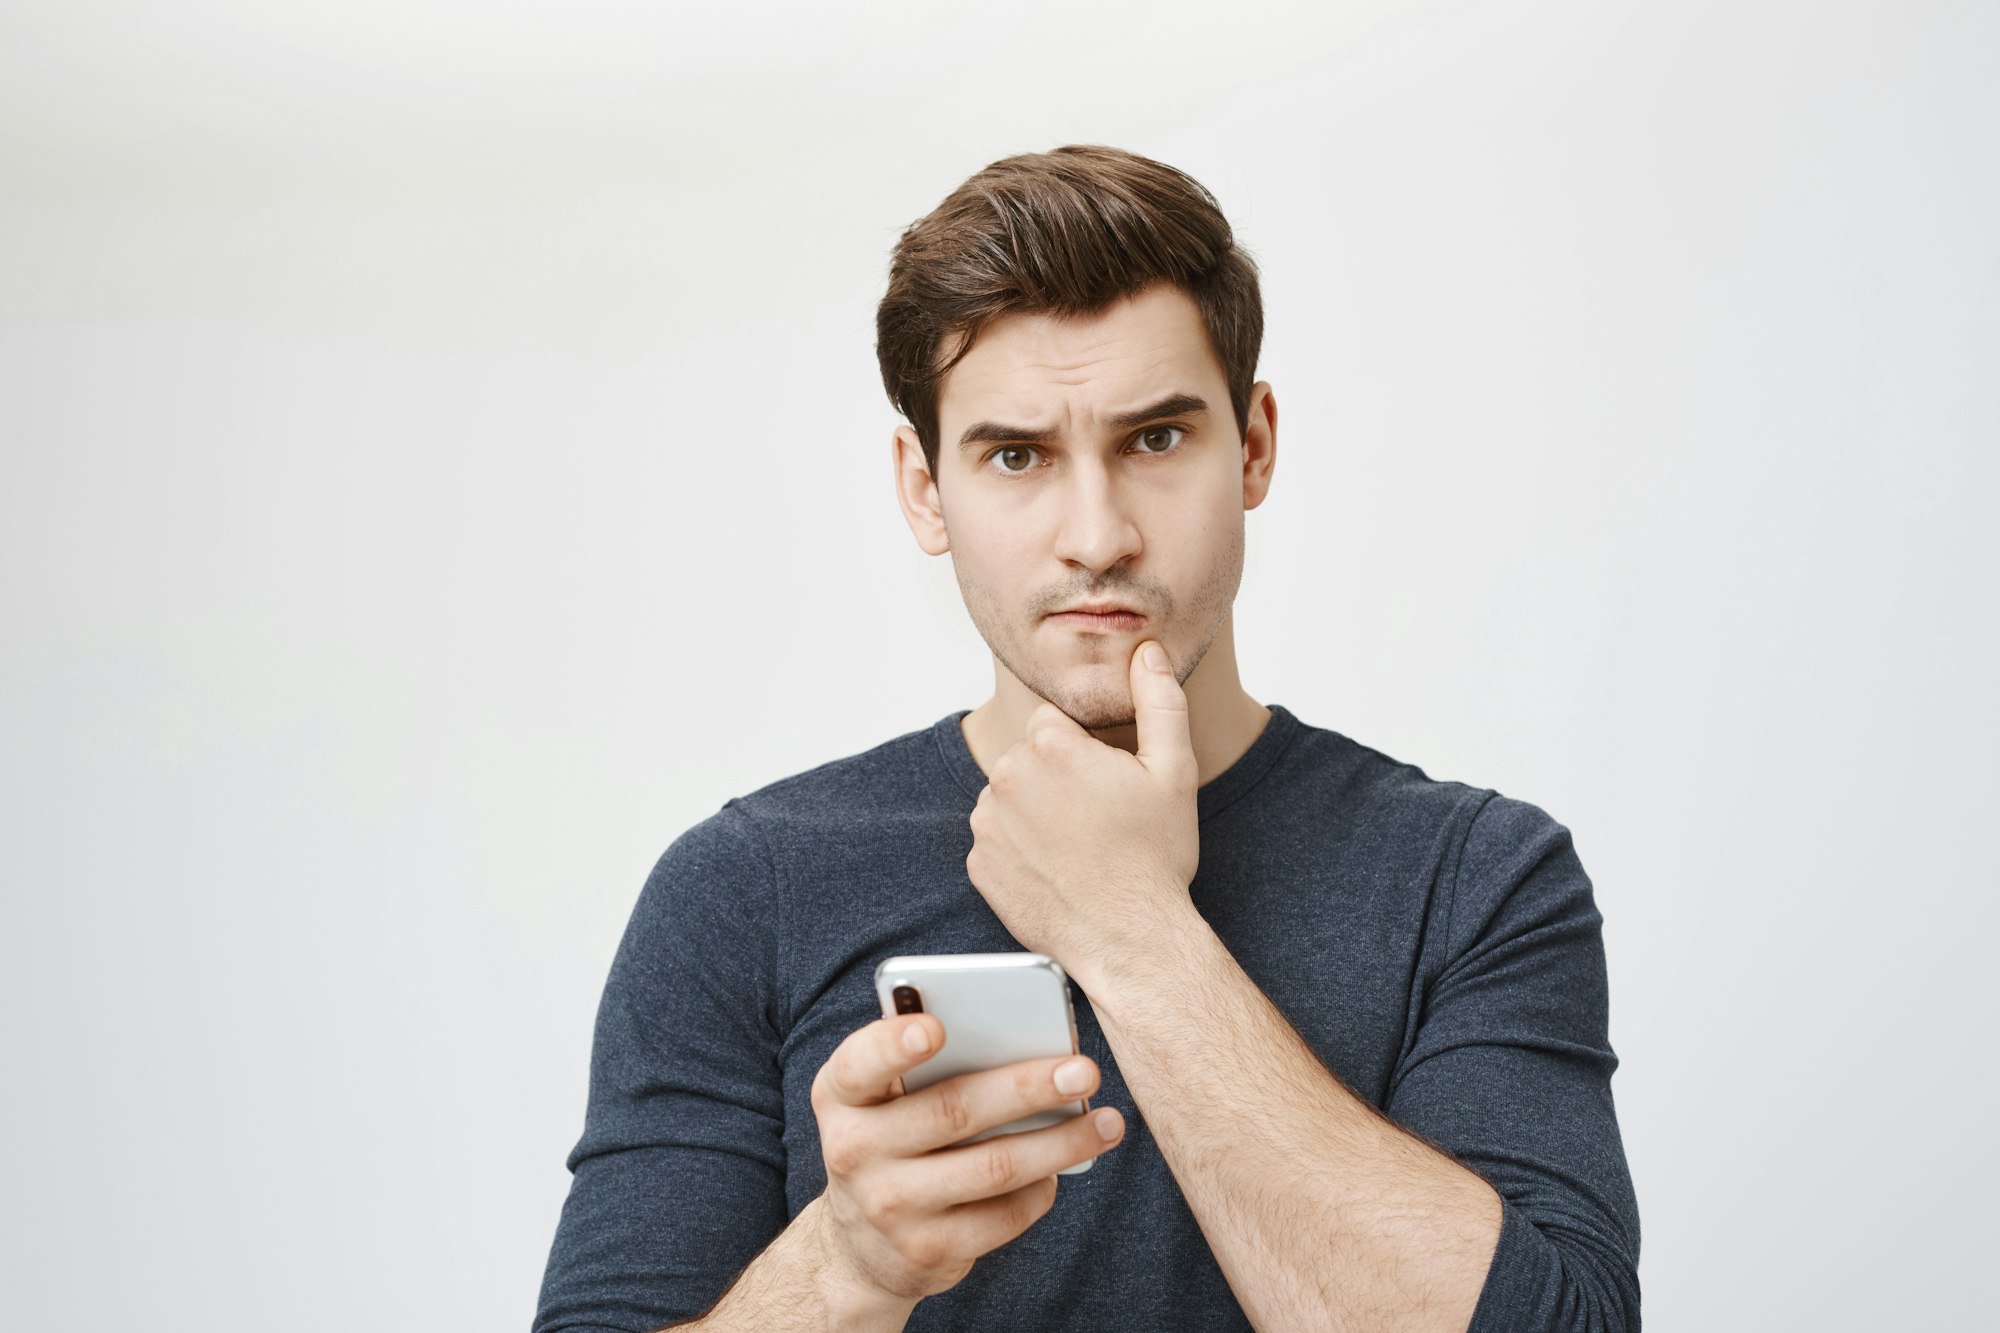 Une photo en médaillon d'un jeune étudiant blanc qui a l'air inquiet et confus alors qu'il tient un smartphone à la main et qu'il a l'air de ne pas savoir où il en est.